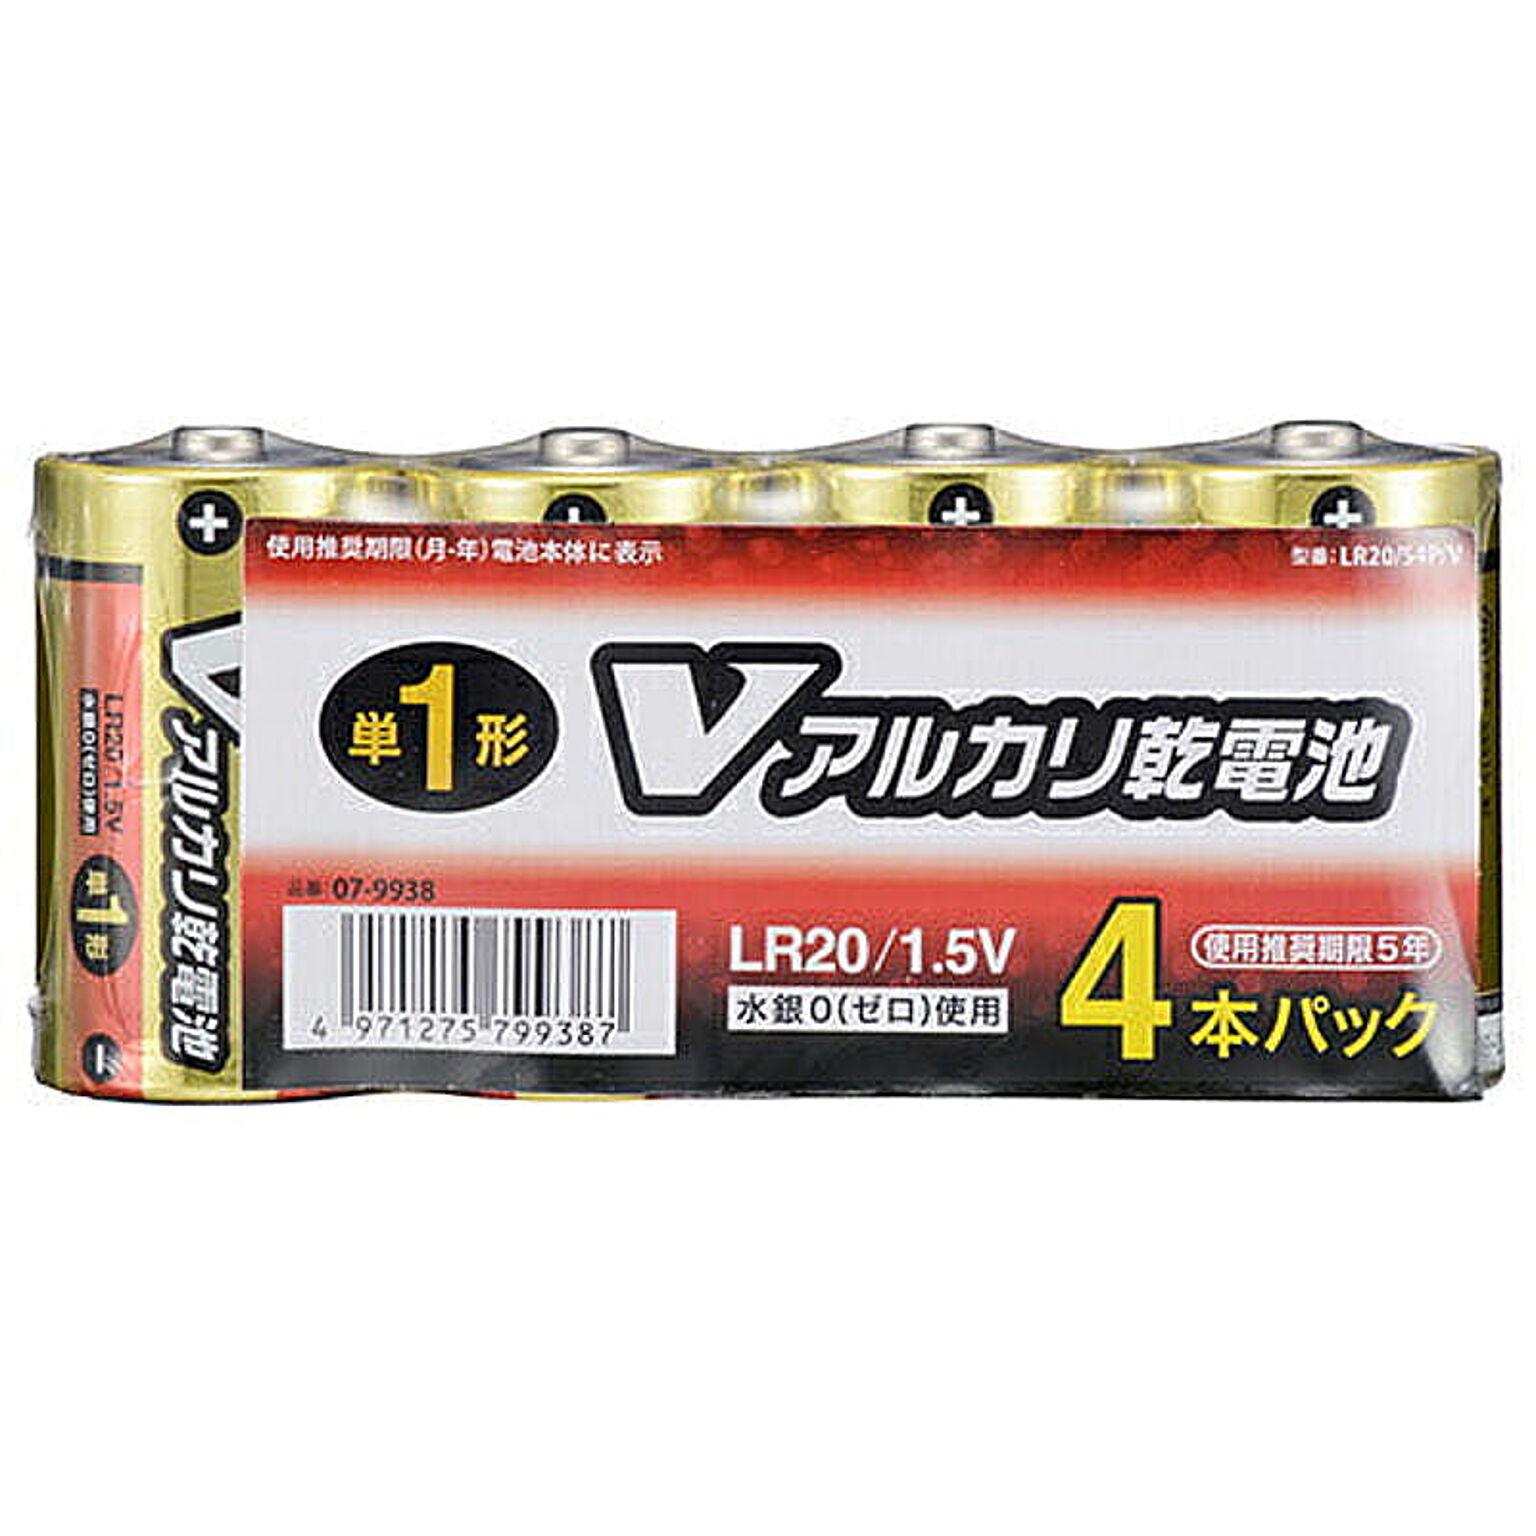 オーム電機 OHM アルカリ乾電池 単1形 4本パック LR20/S4P/V 管理No. 4971275799387